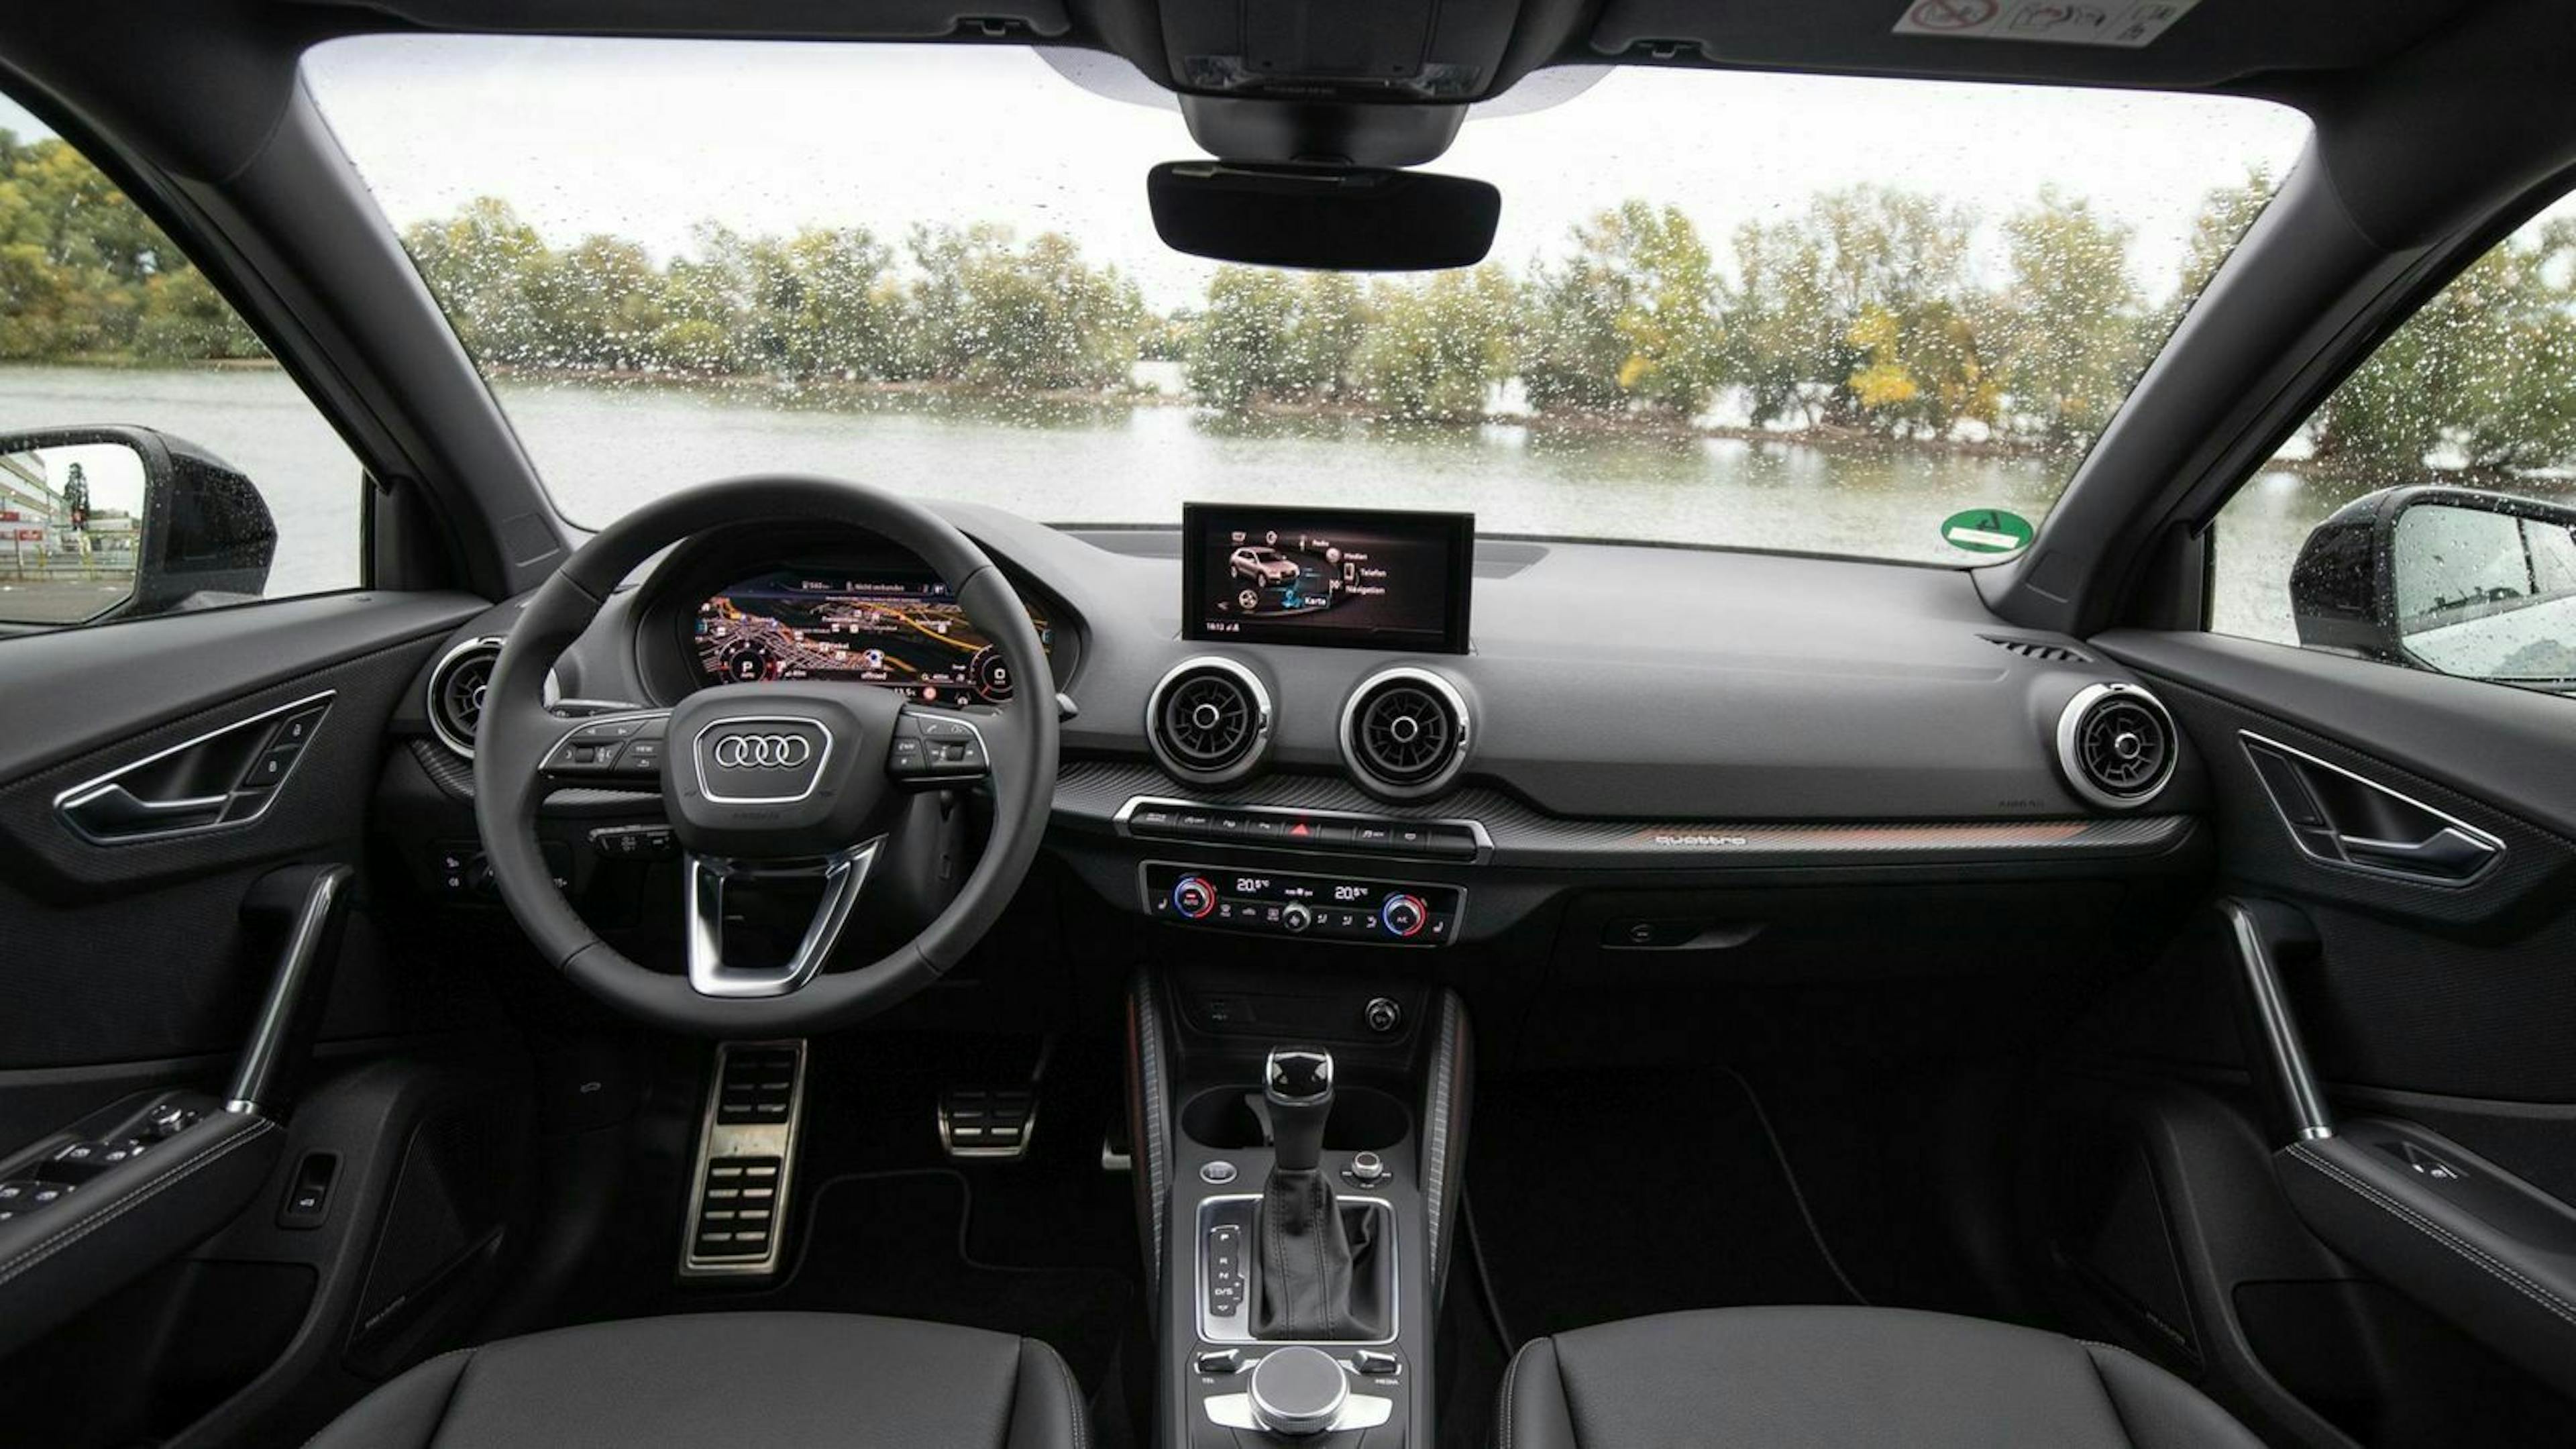 Zu sehen ist das Cockpit des gelifteten Audi Q2